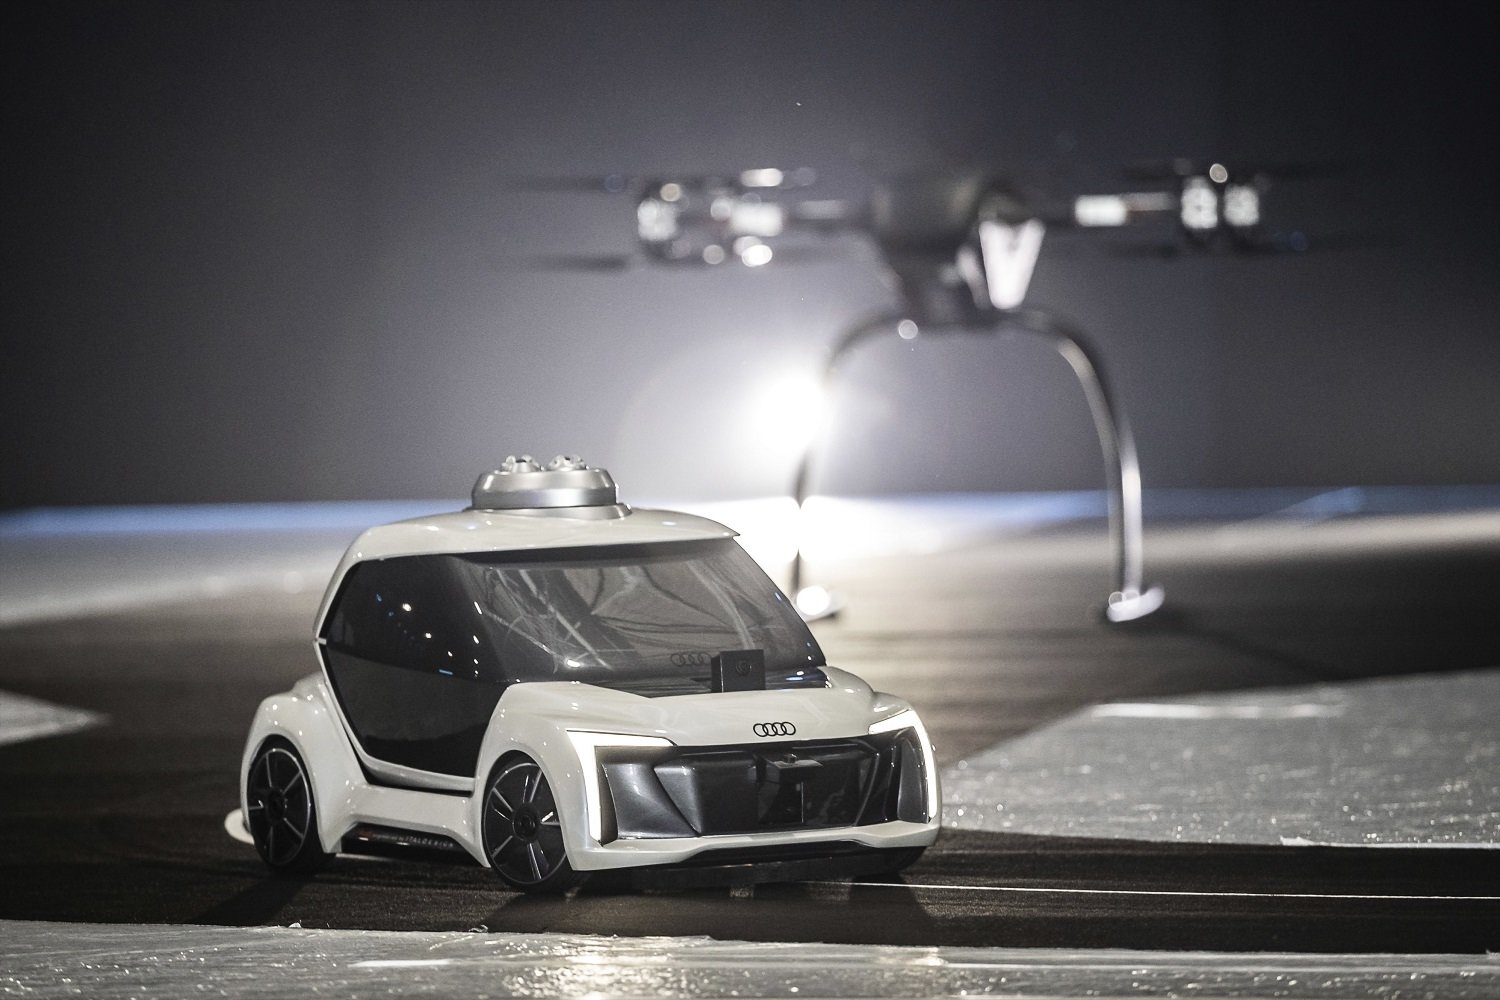 Zmenšený model konceptu létajícího autonomního taxi Audi Pop.Up Next se poprvé vznesl